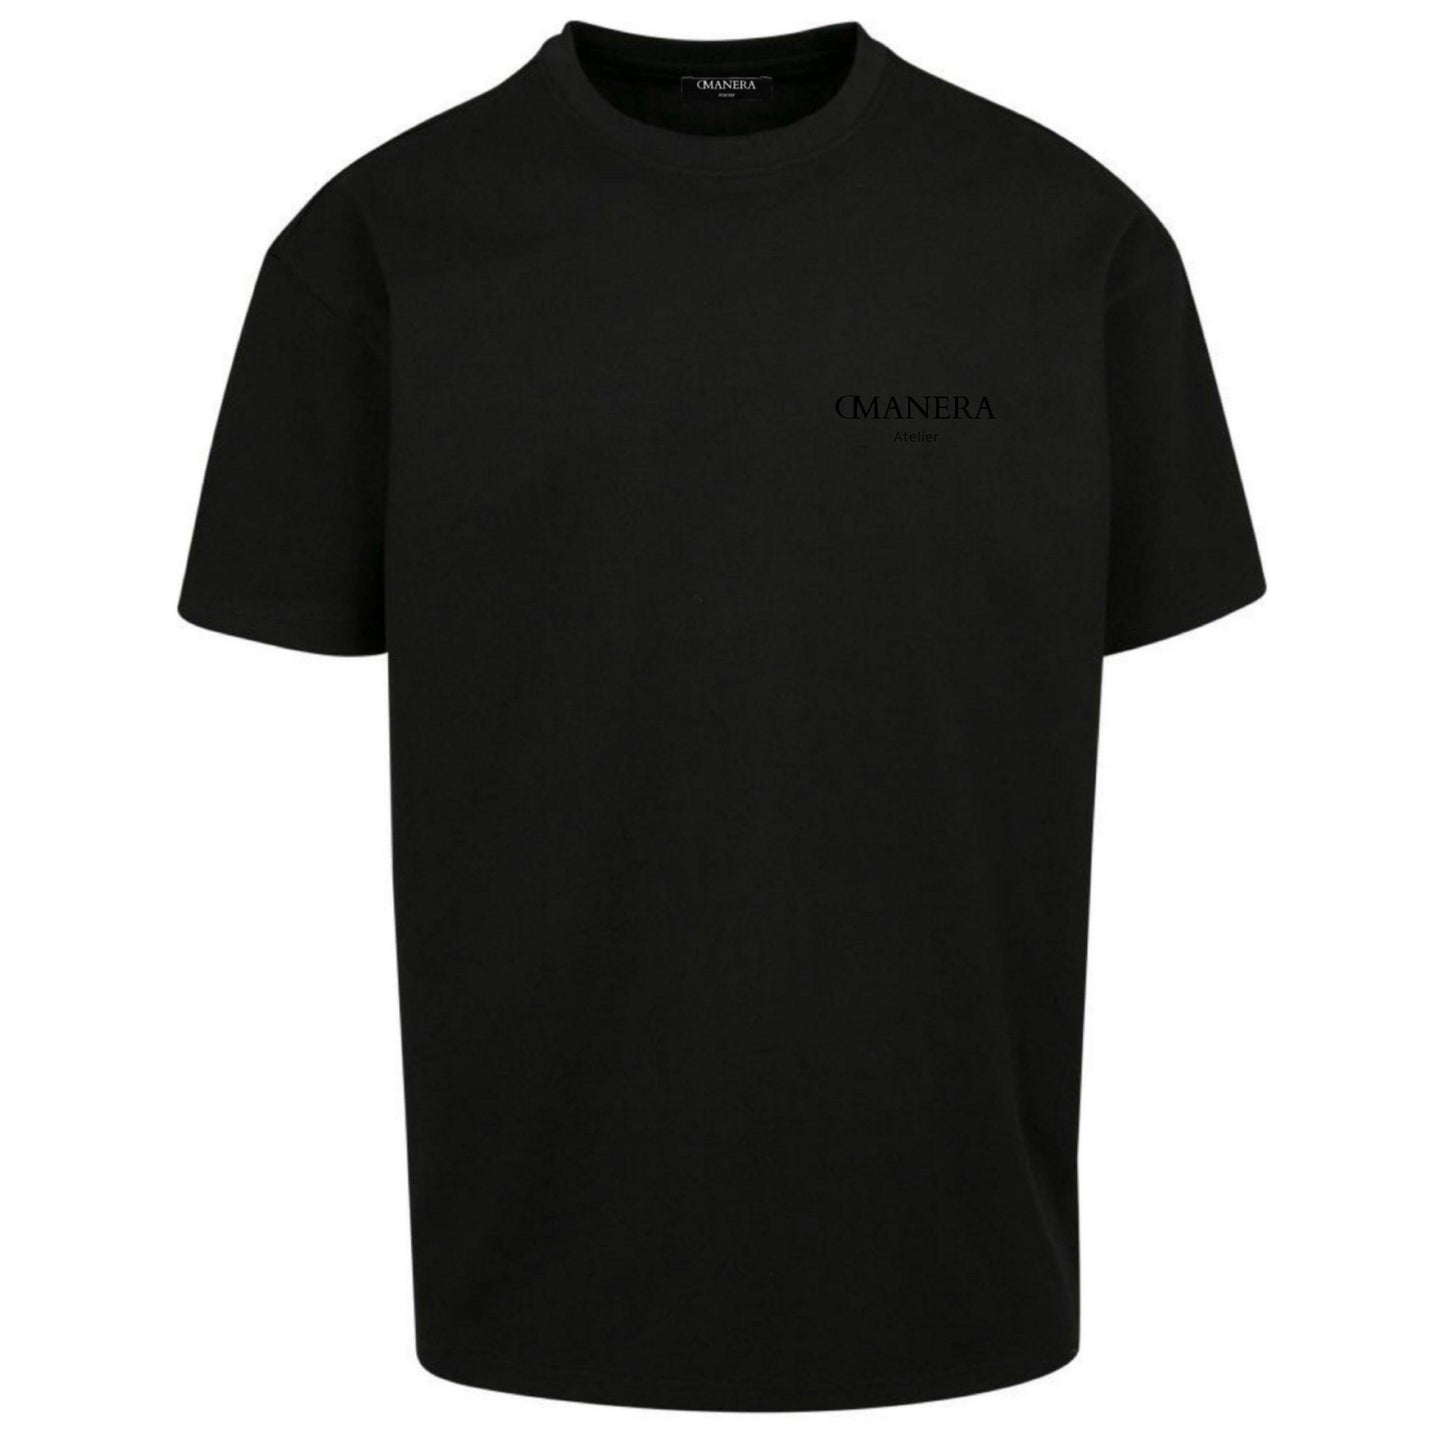 Oversize Shirt All Black 240 g/m² - DMANERA Atelier